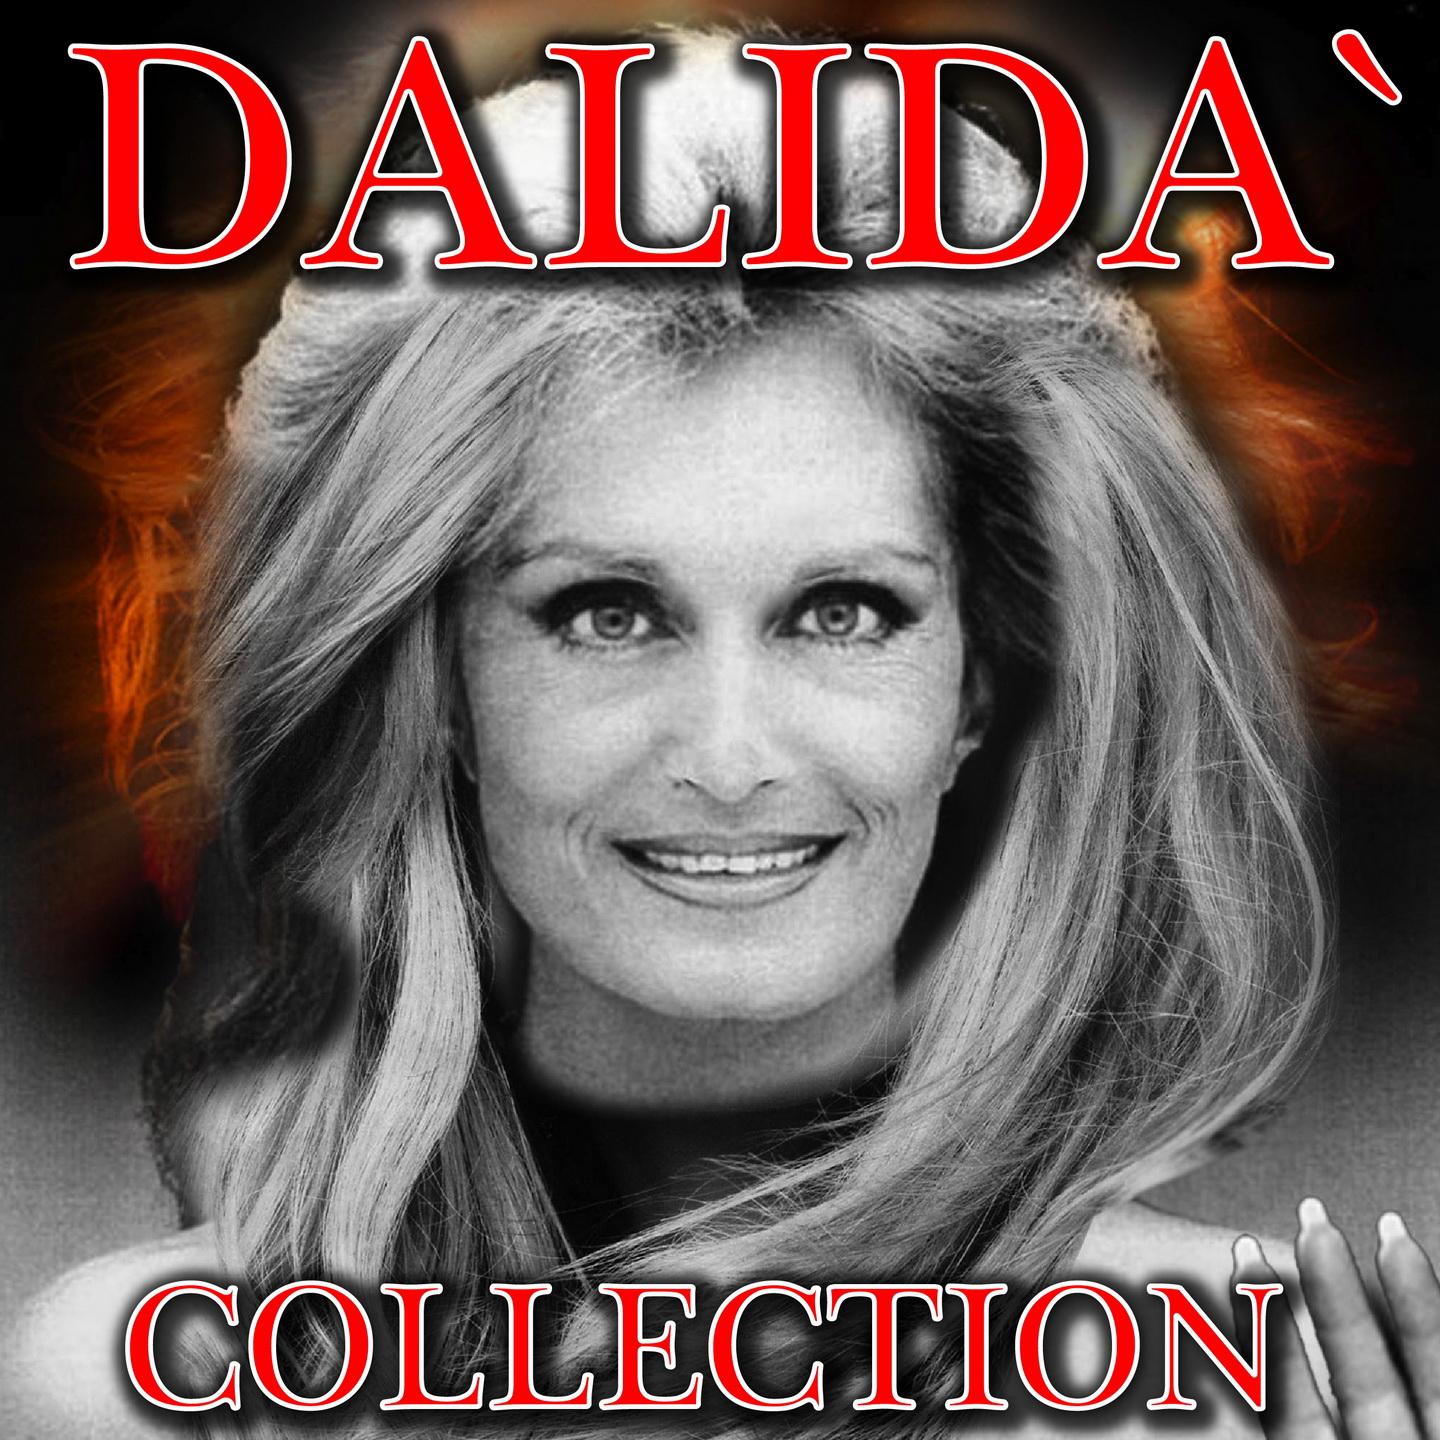 Il meglio di Dalida专辑